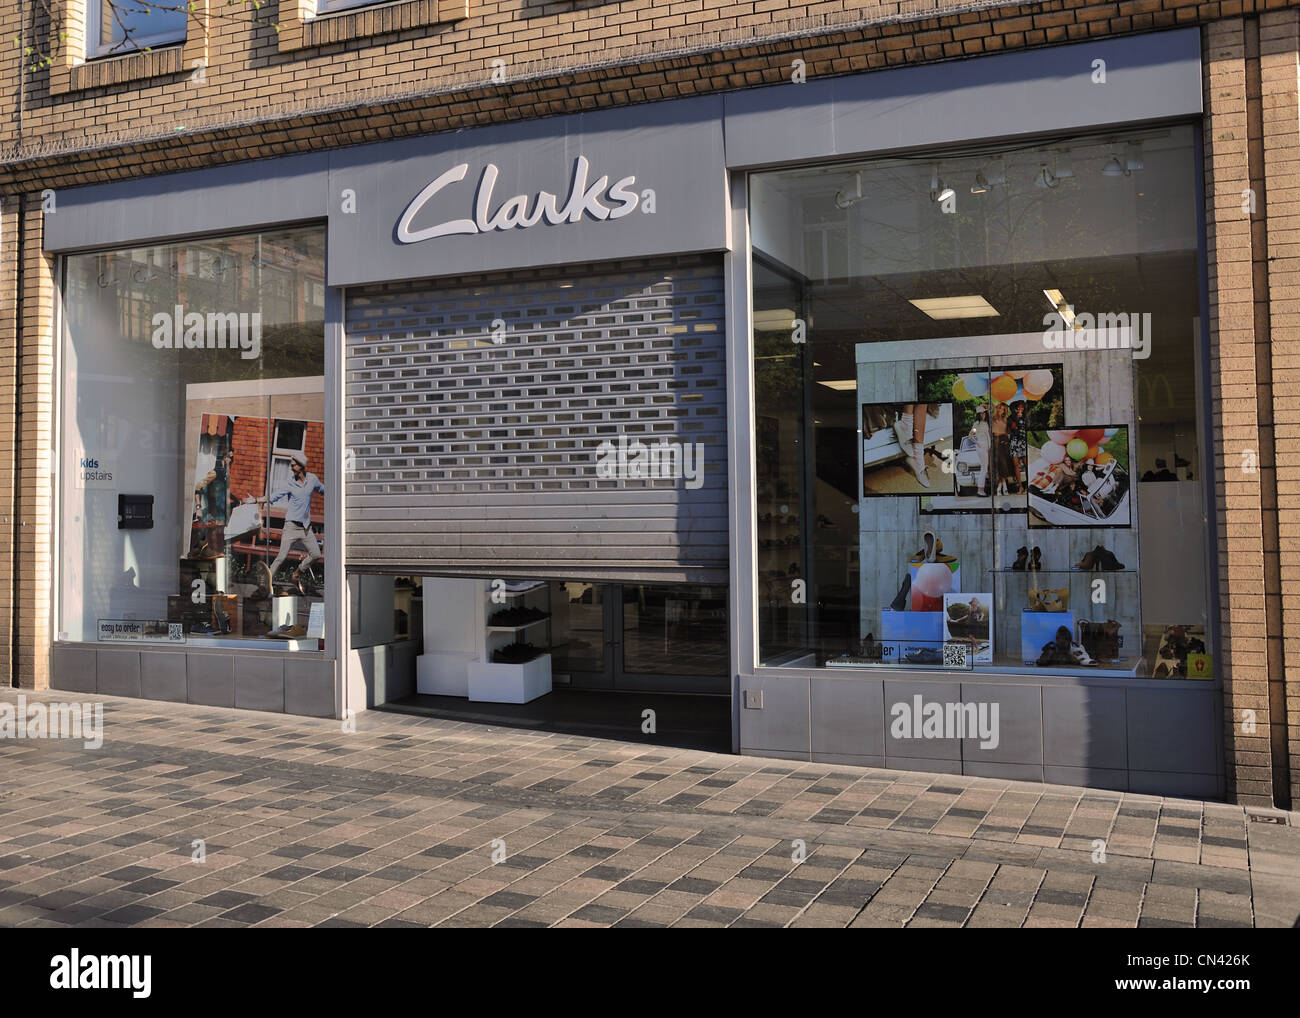 Shutter down on Clarks shoe shop in 